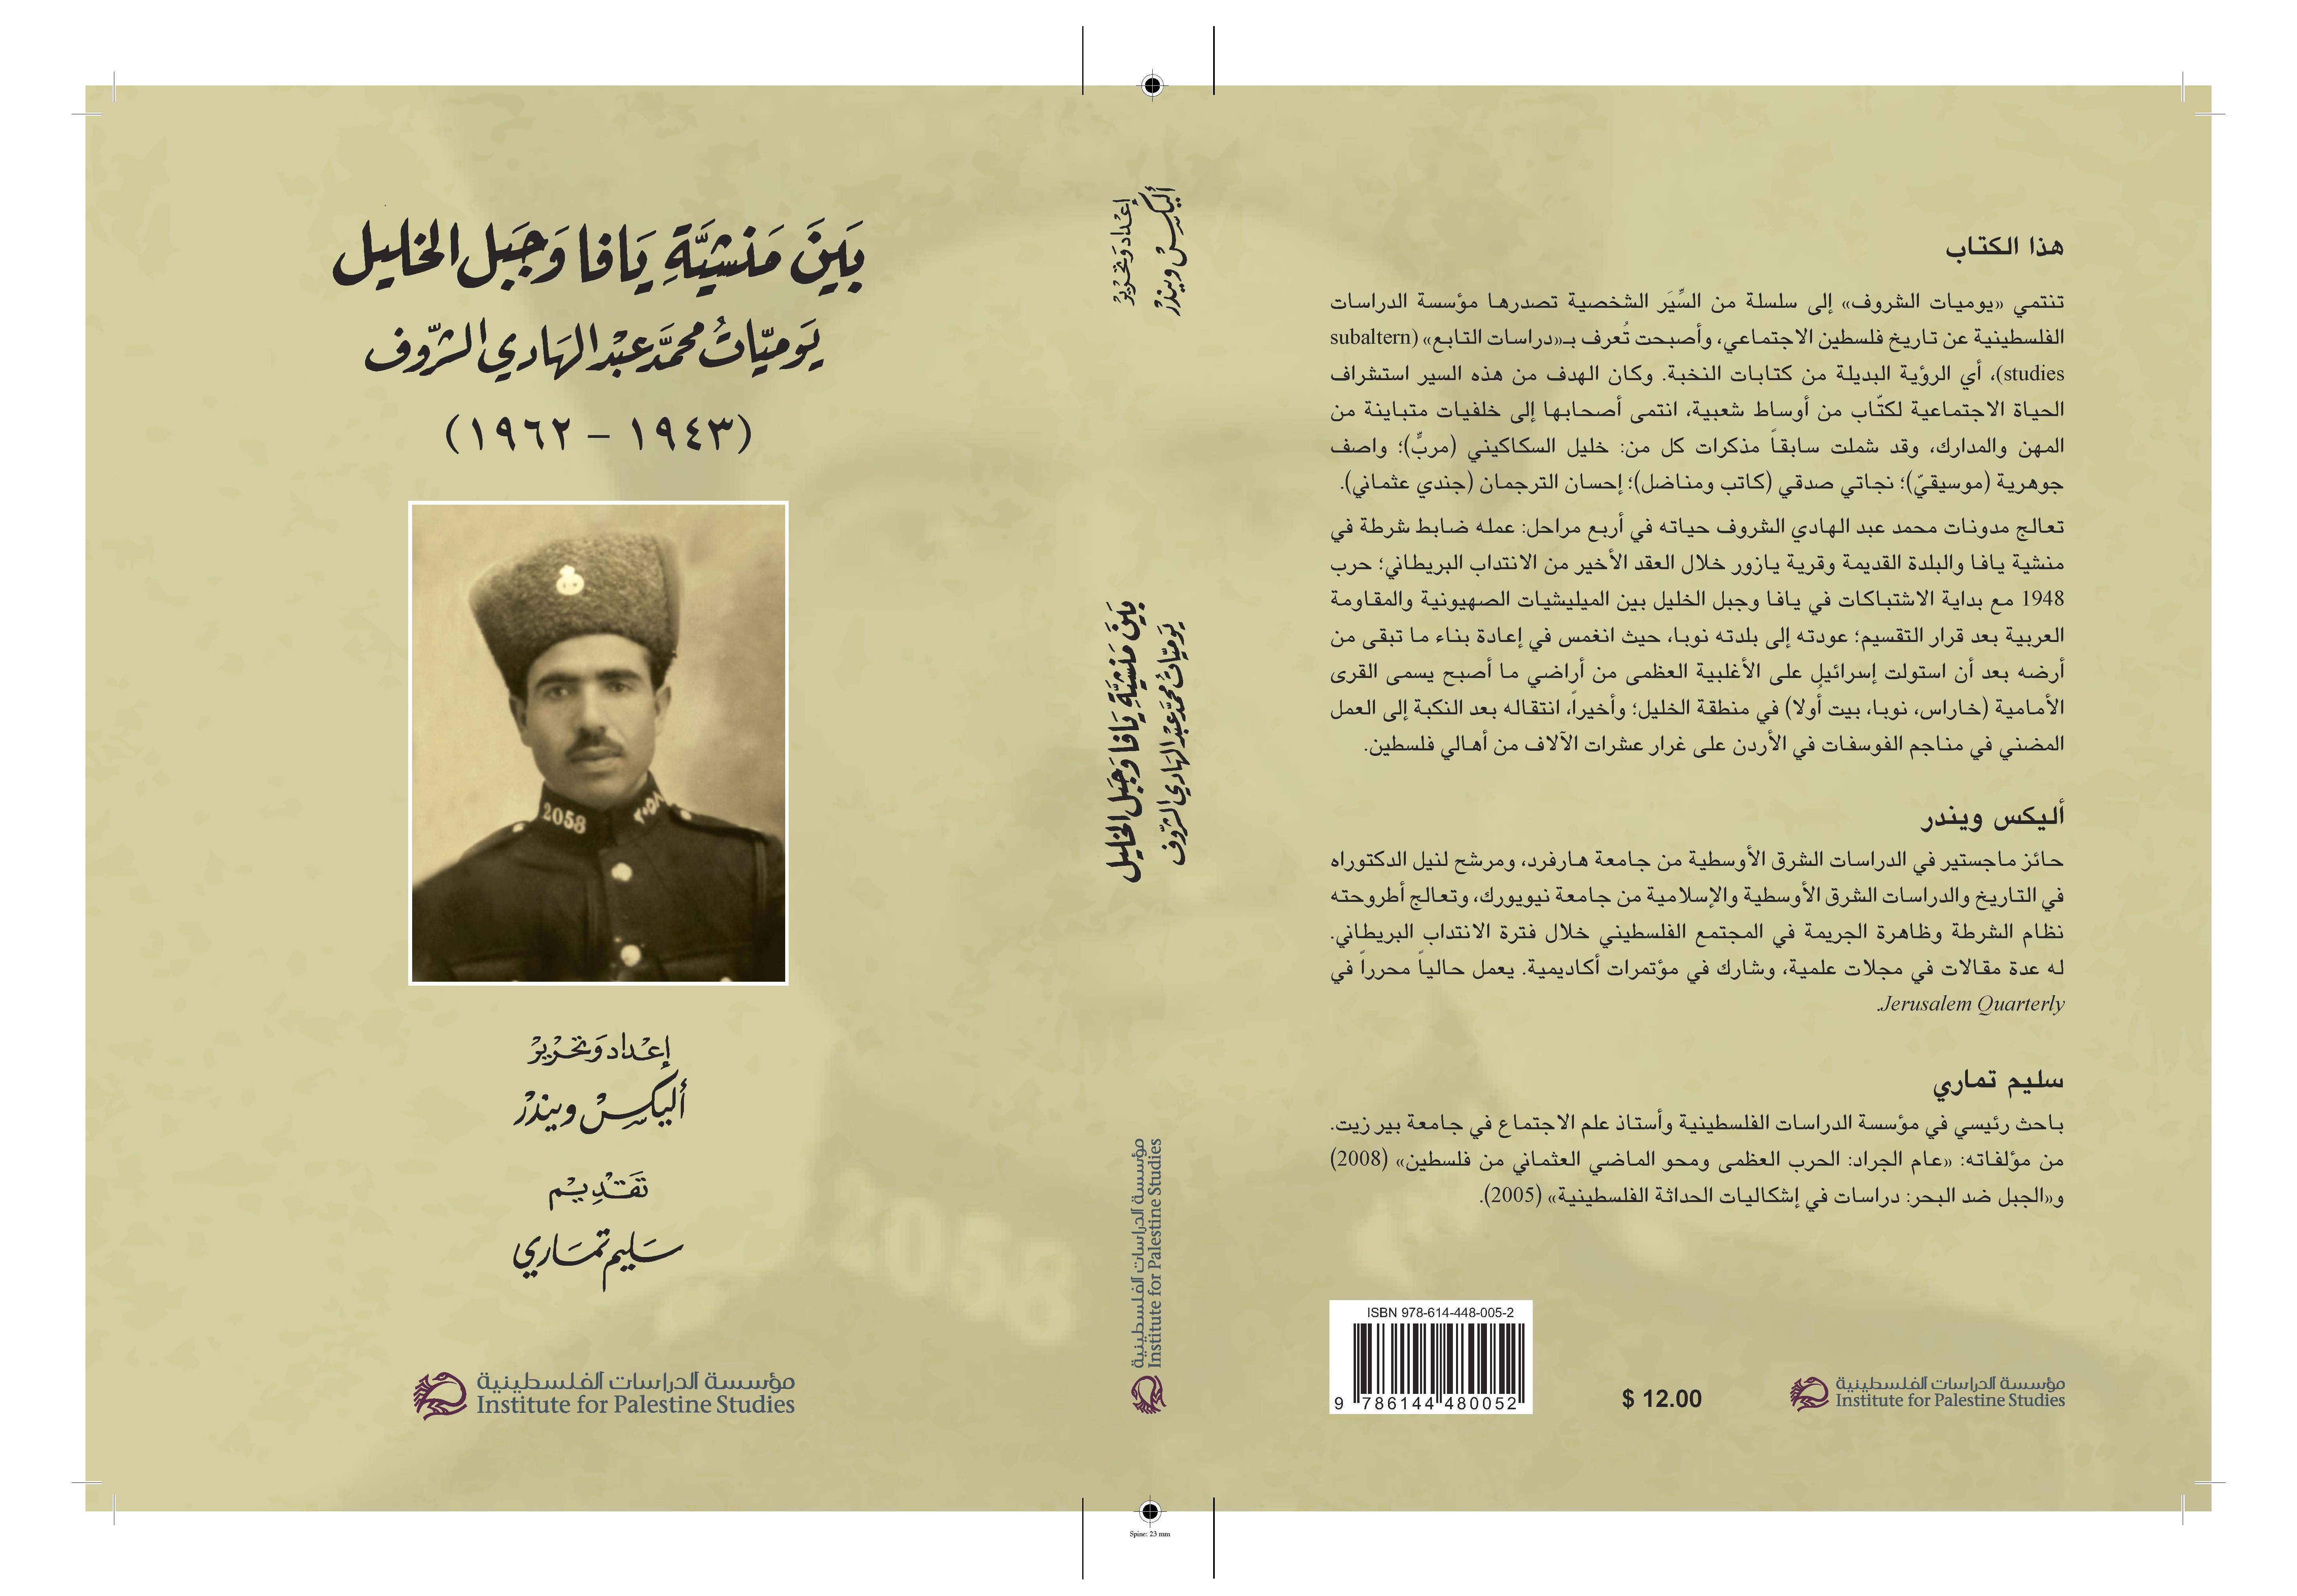 بين منشية يافا وجبل الخليل يوميات محمد عبد الهادي الشروف (1943-1962)